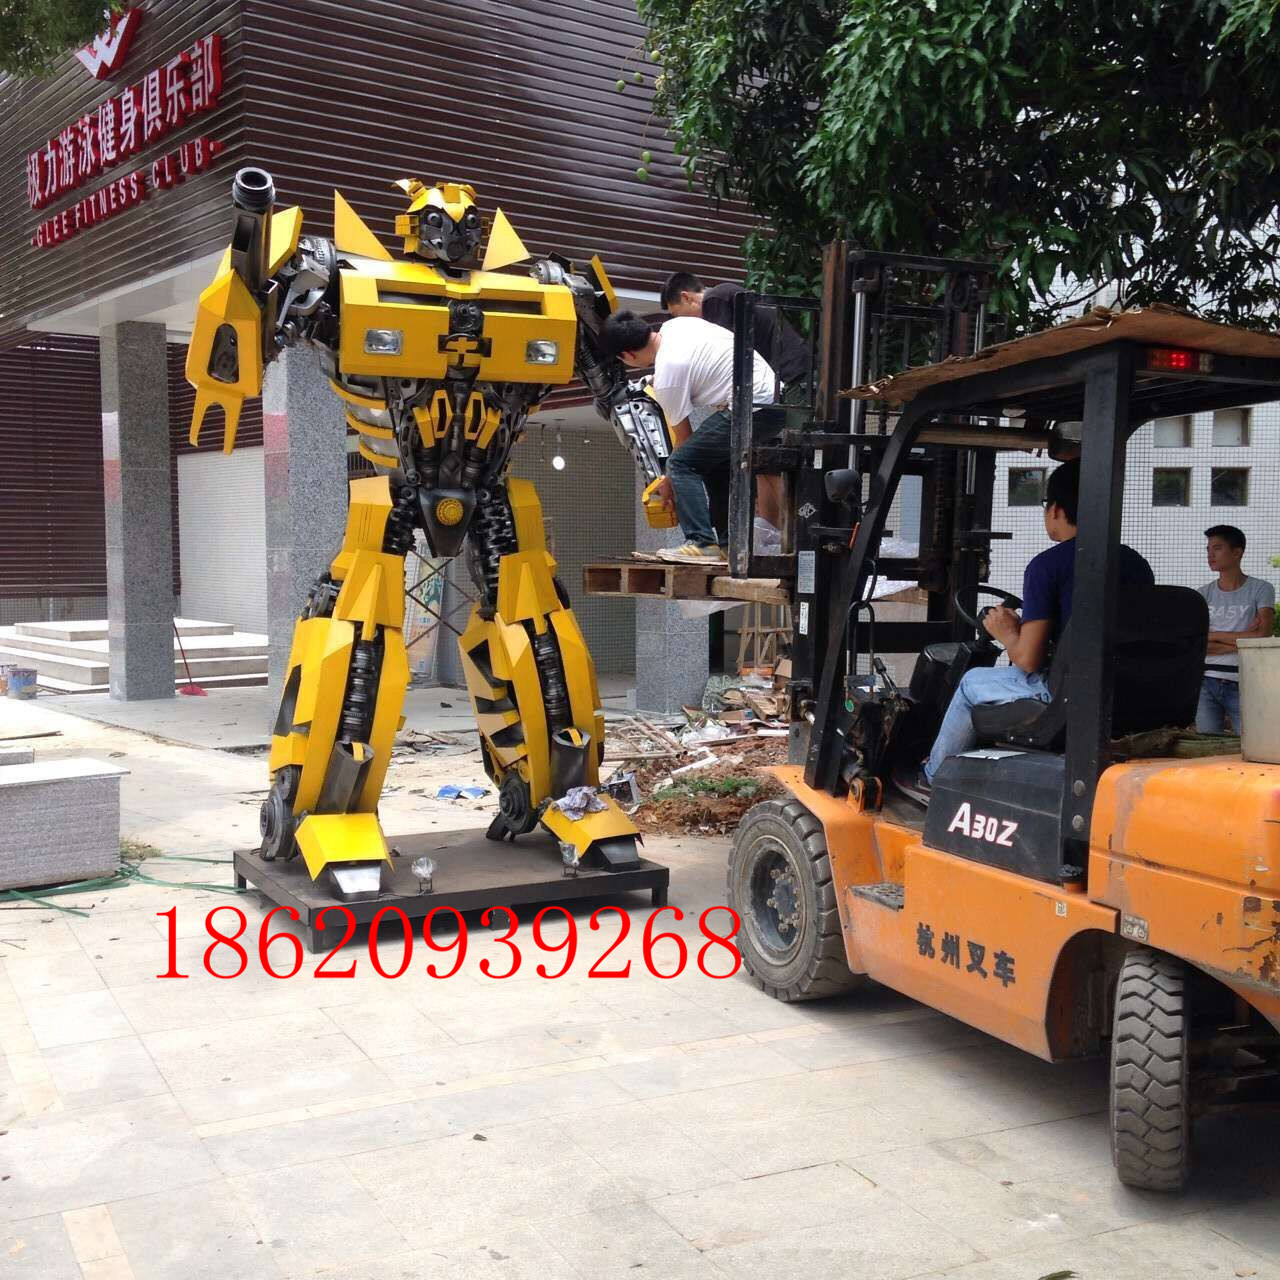 大型变形金刚  广州展览展示变形金刚模型定做 大型钢雕机器人道具